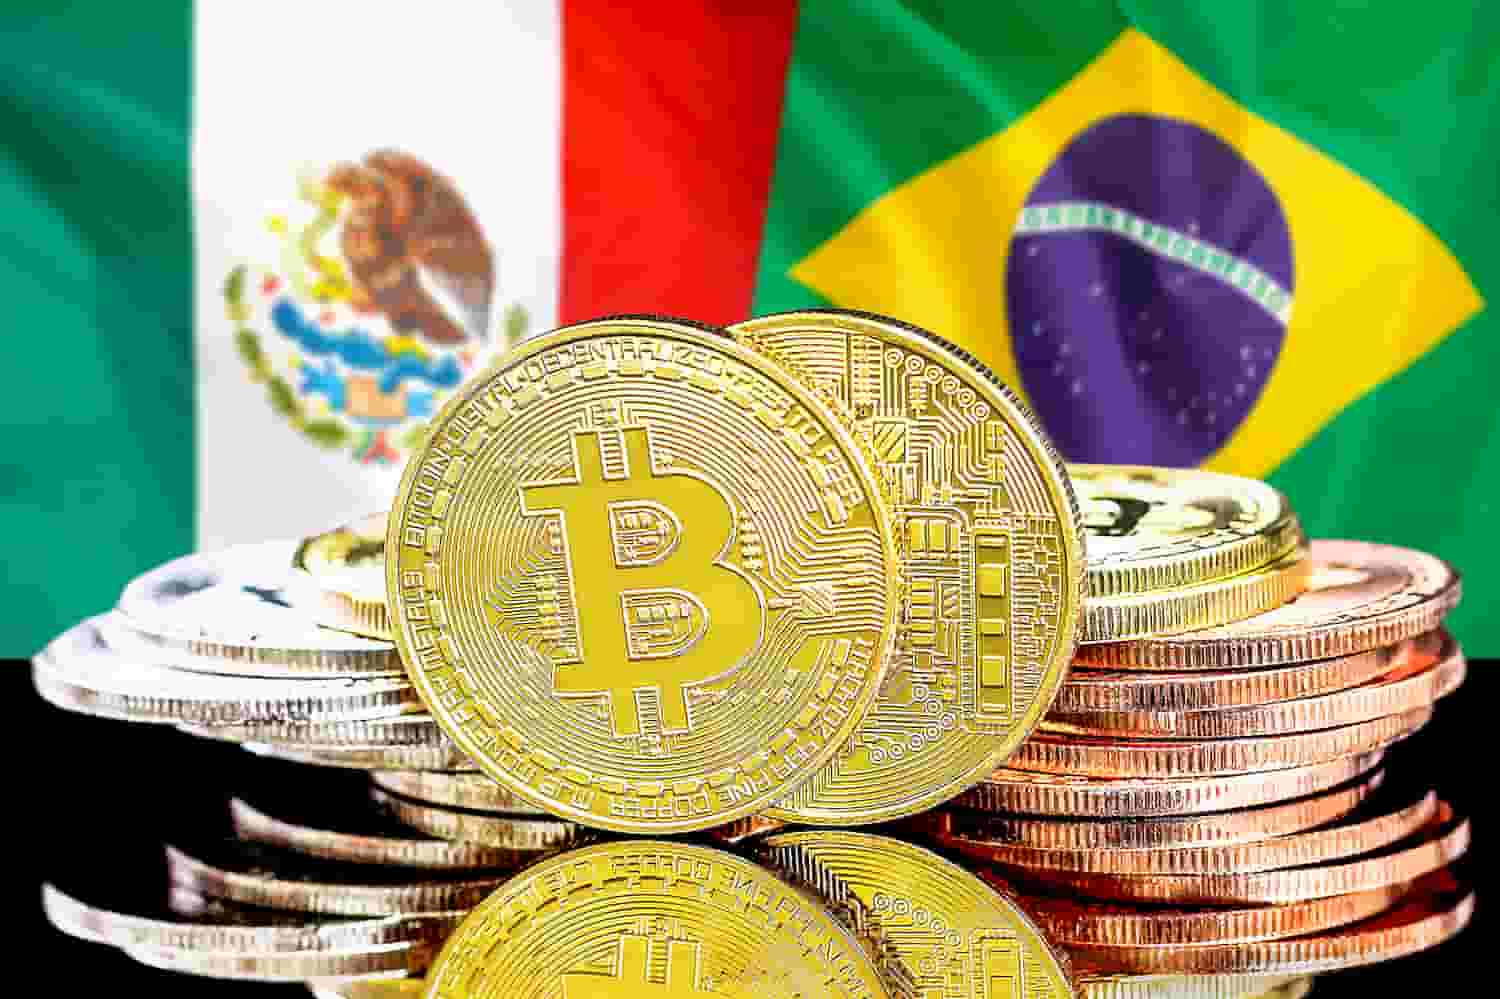 Moedas de bitcoin e bandeiras do Brasil e México ao fundo